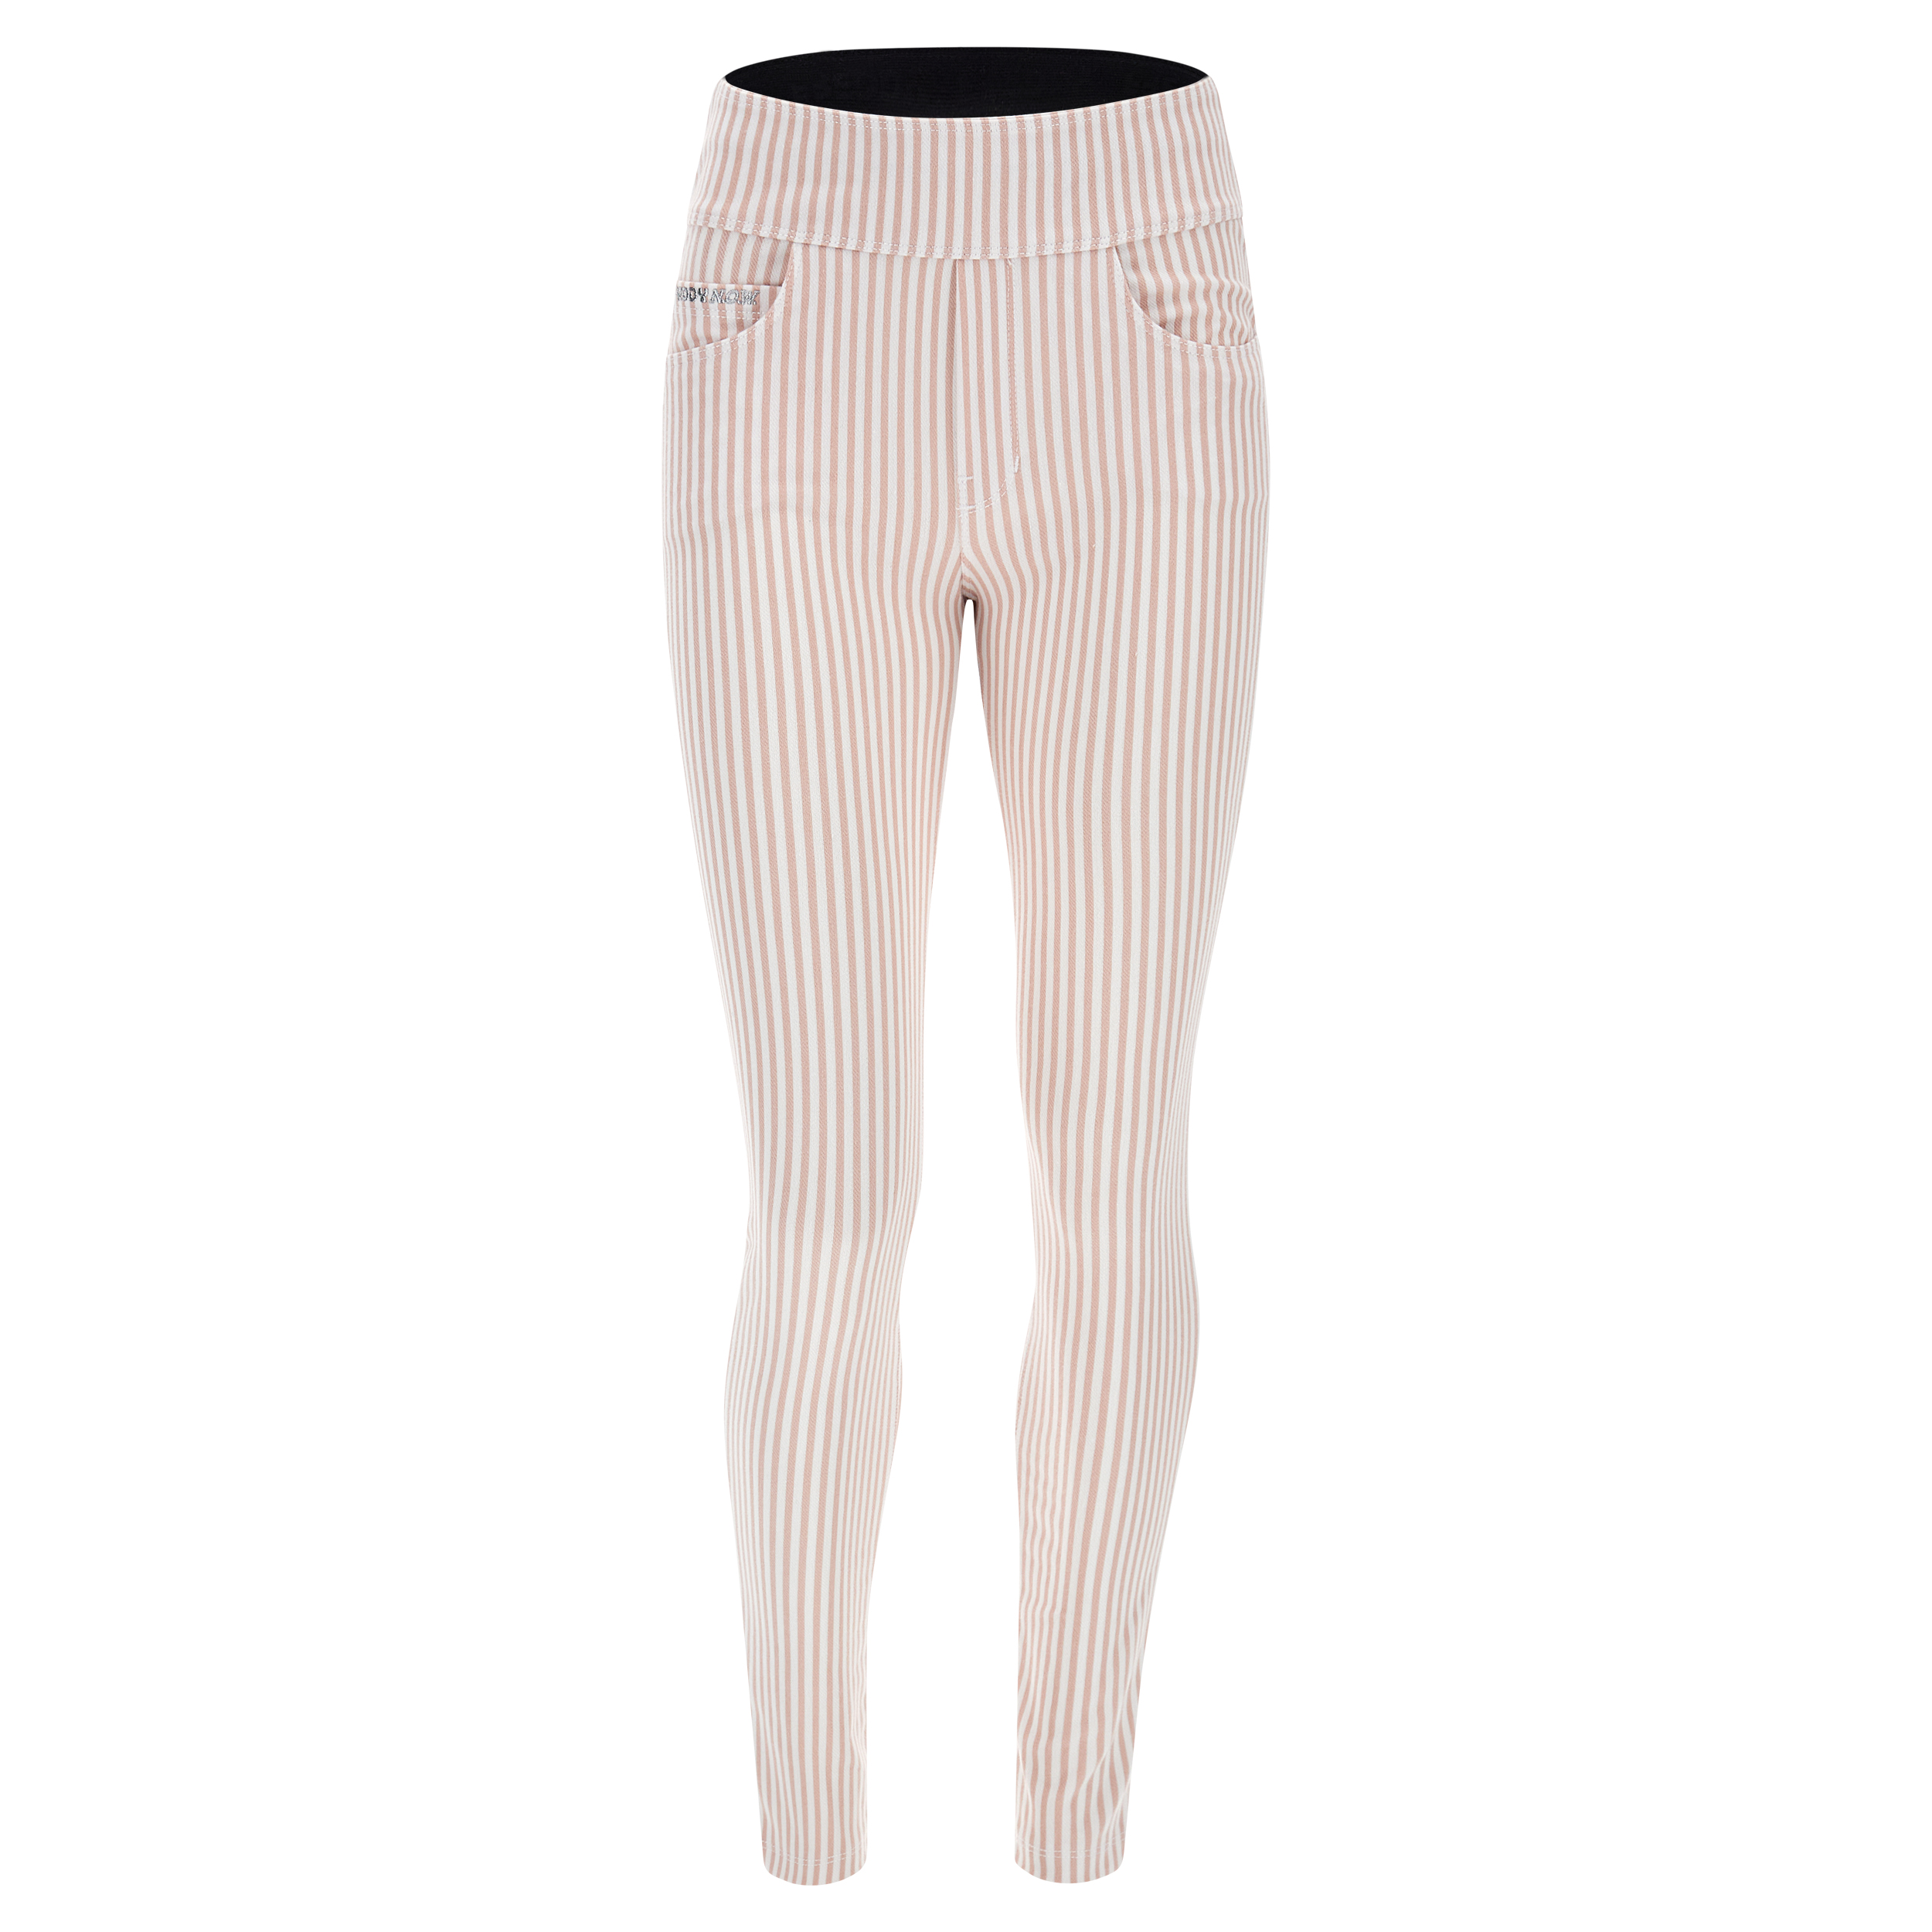 freddy pantalone n.o.w.® vita risvoltabile in jersey drill a righe pastello, rose cloud-white stripes, donna